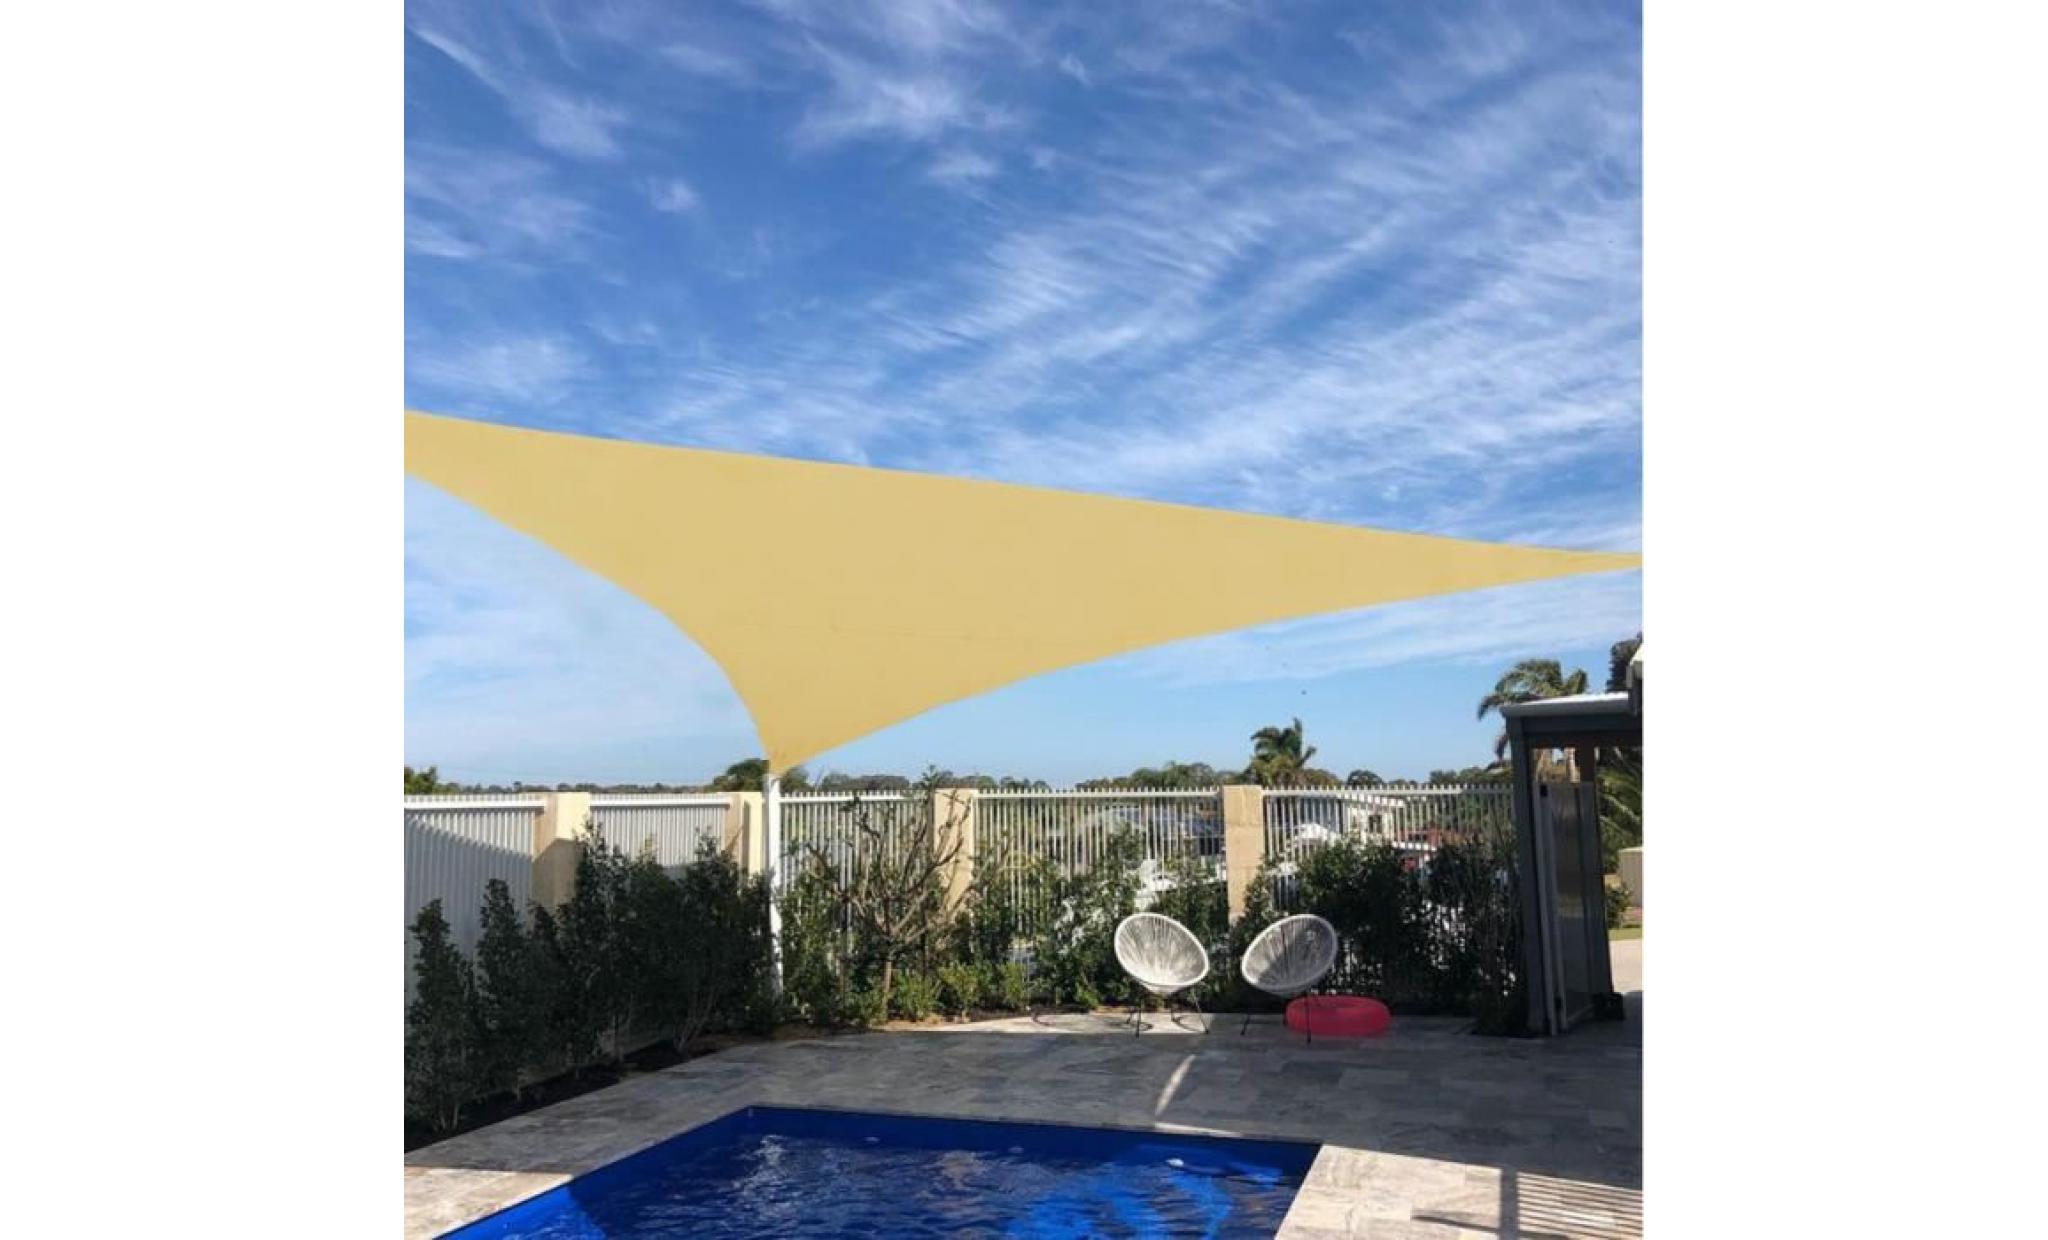 laxllent voiles d'ombrage,3x3x3m,jaune sable, toile triangulaire tissu anti uv imperméable à l'eau en polyester pour jardin,terrasse pas cher